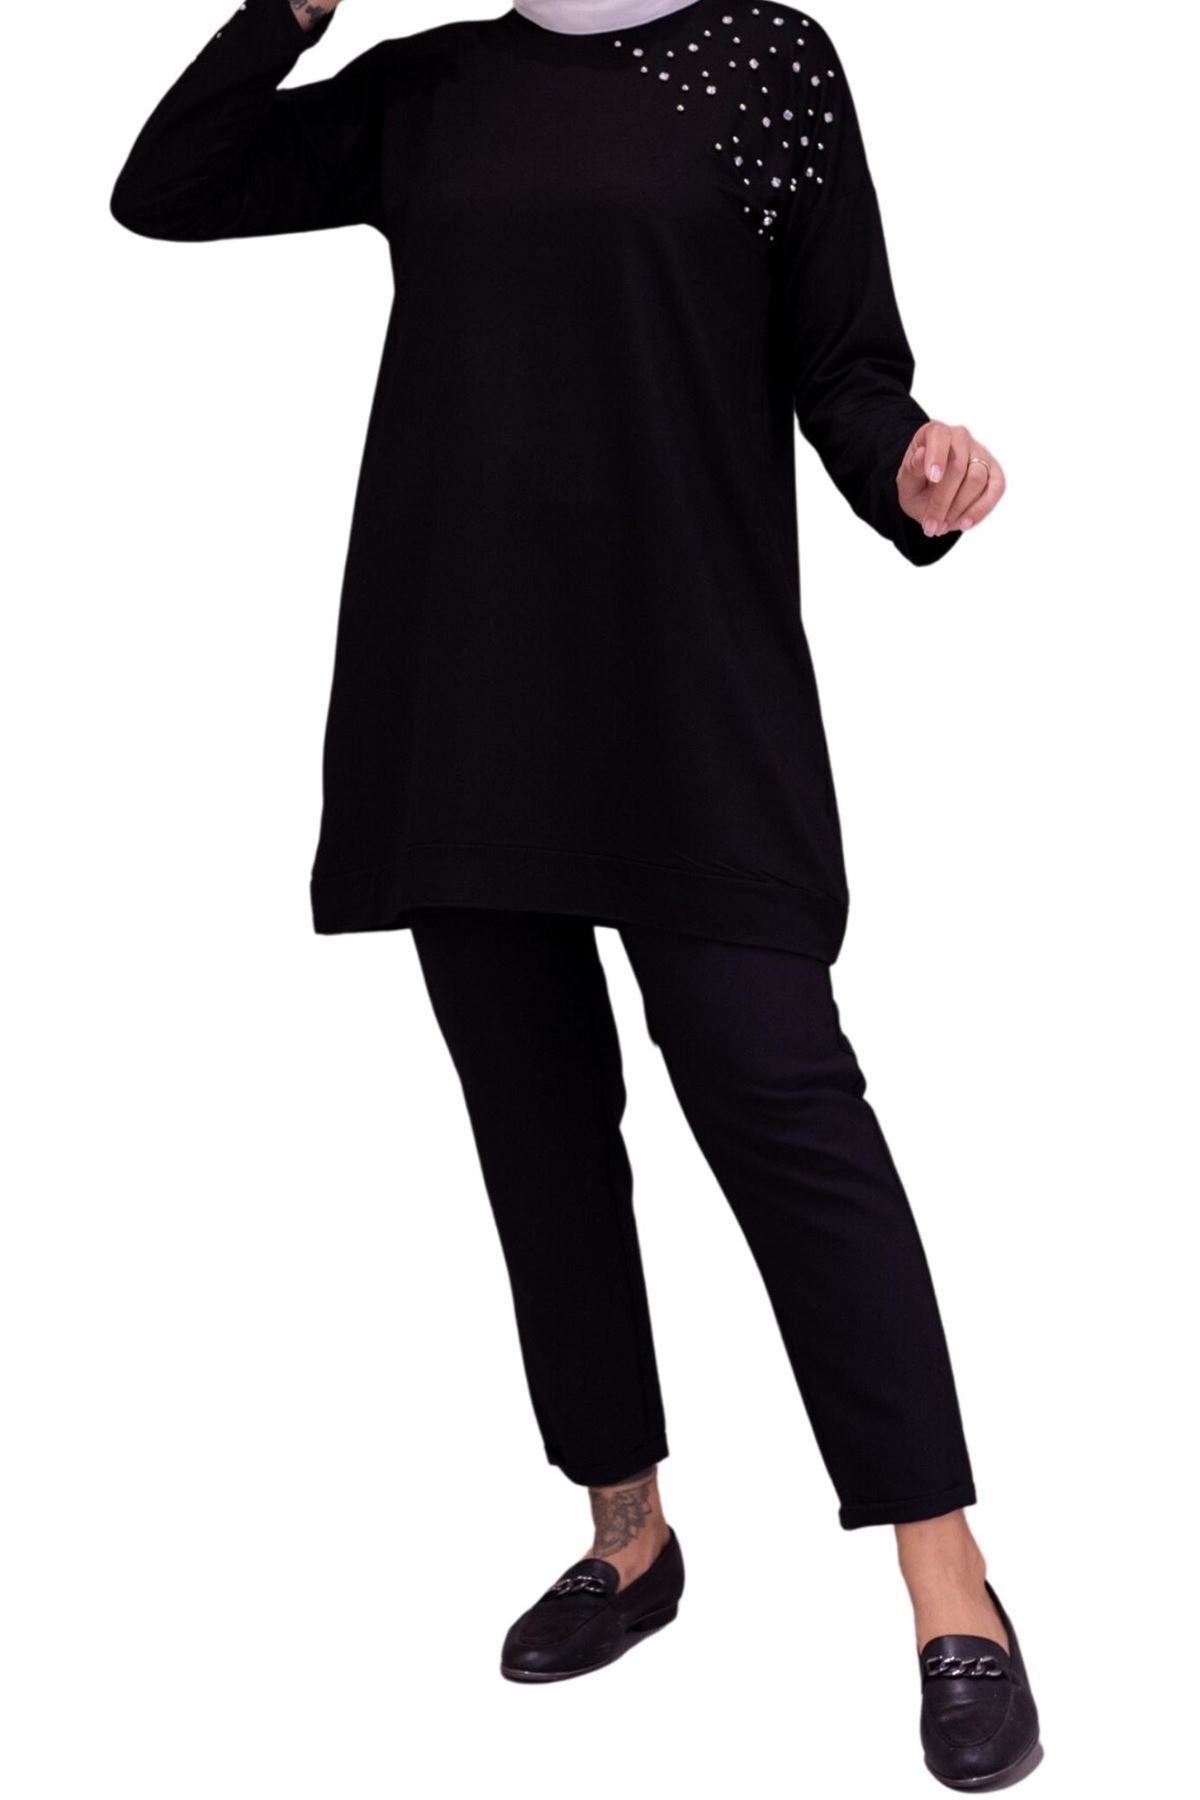 ottoman wear OTW20016 Omuzu Taşlı Tunik Siyah